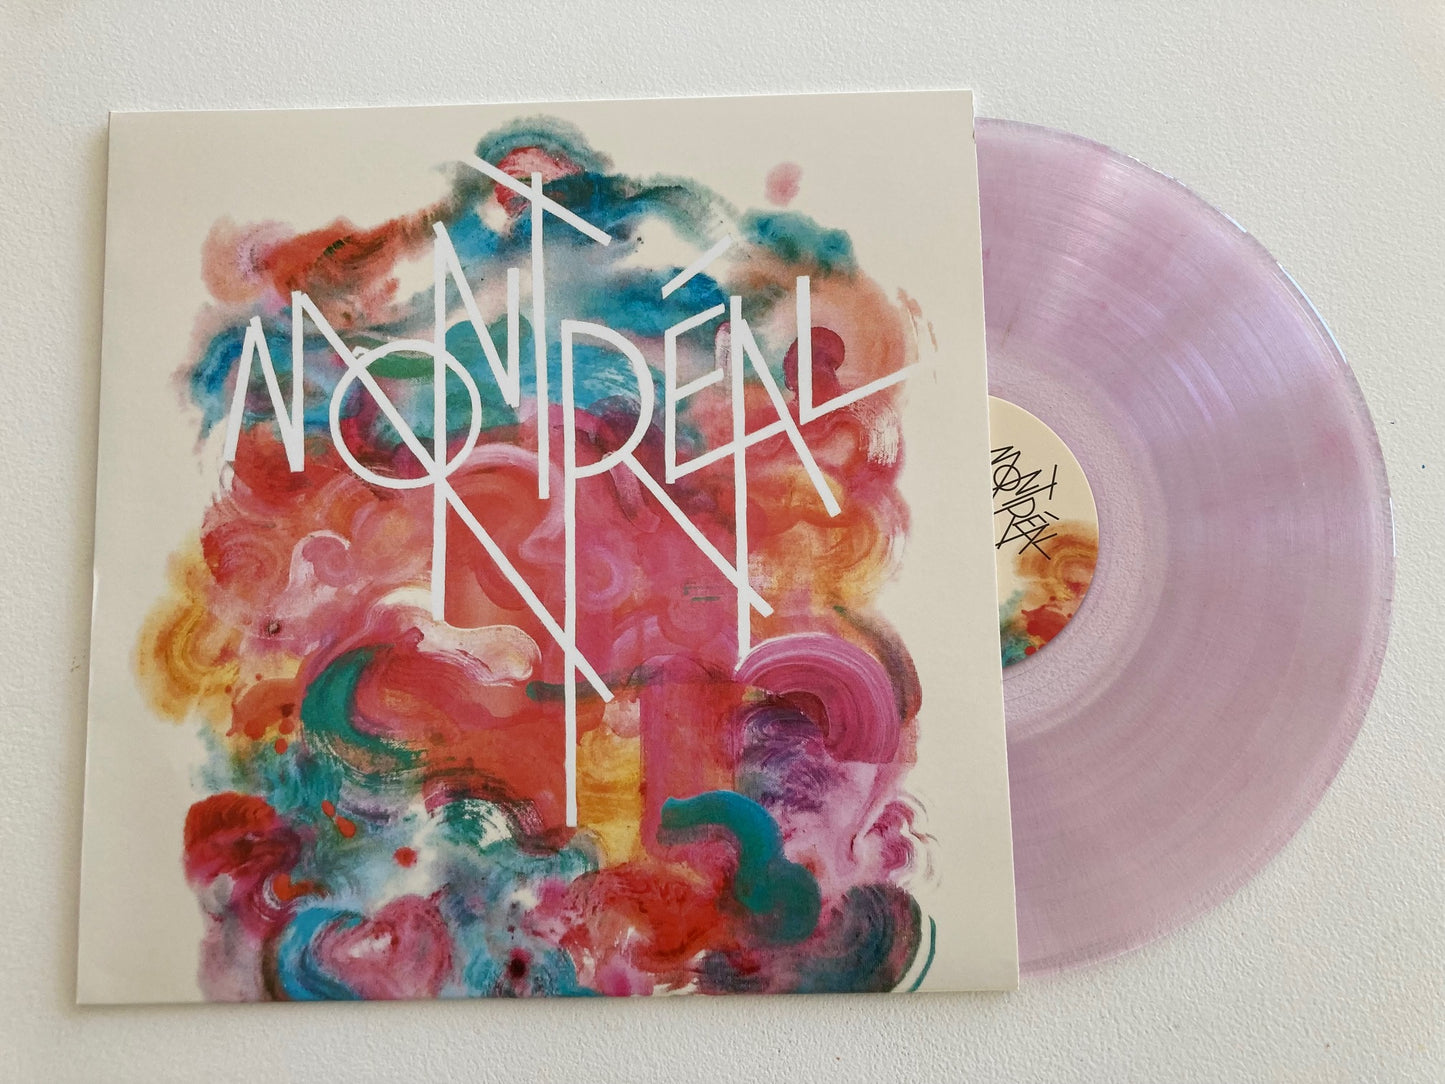 MONTRÉAL (180g purple vinyl)